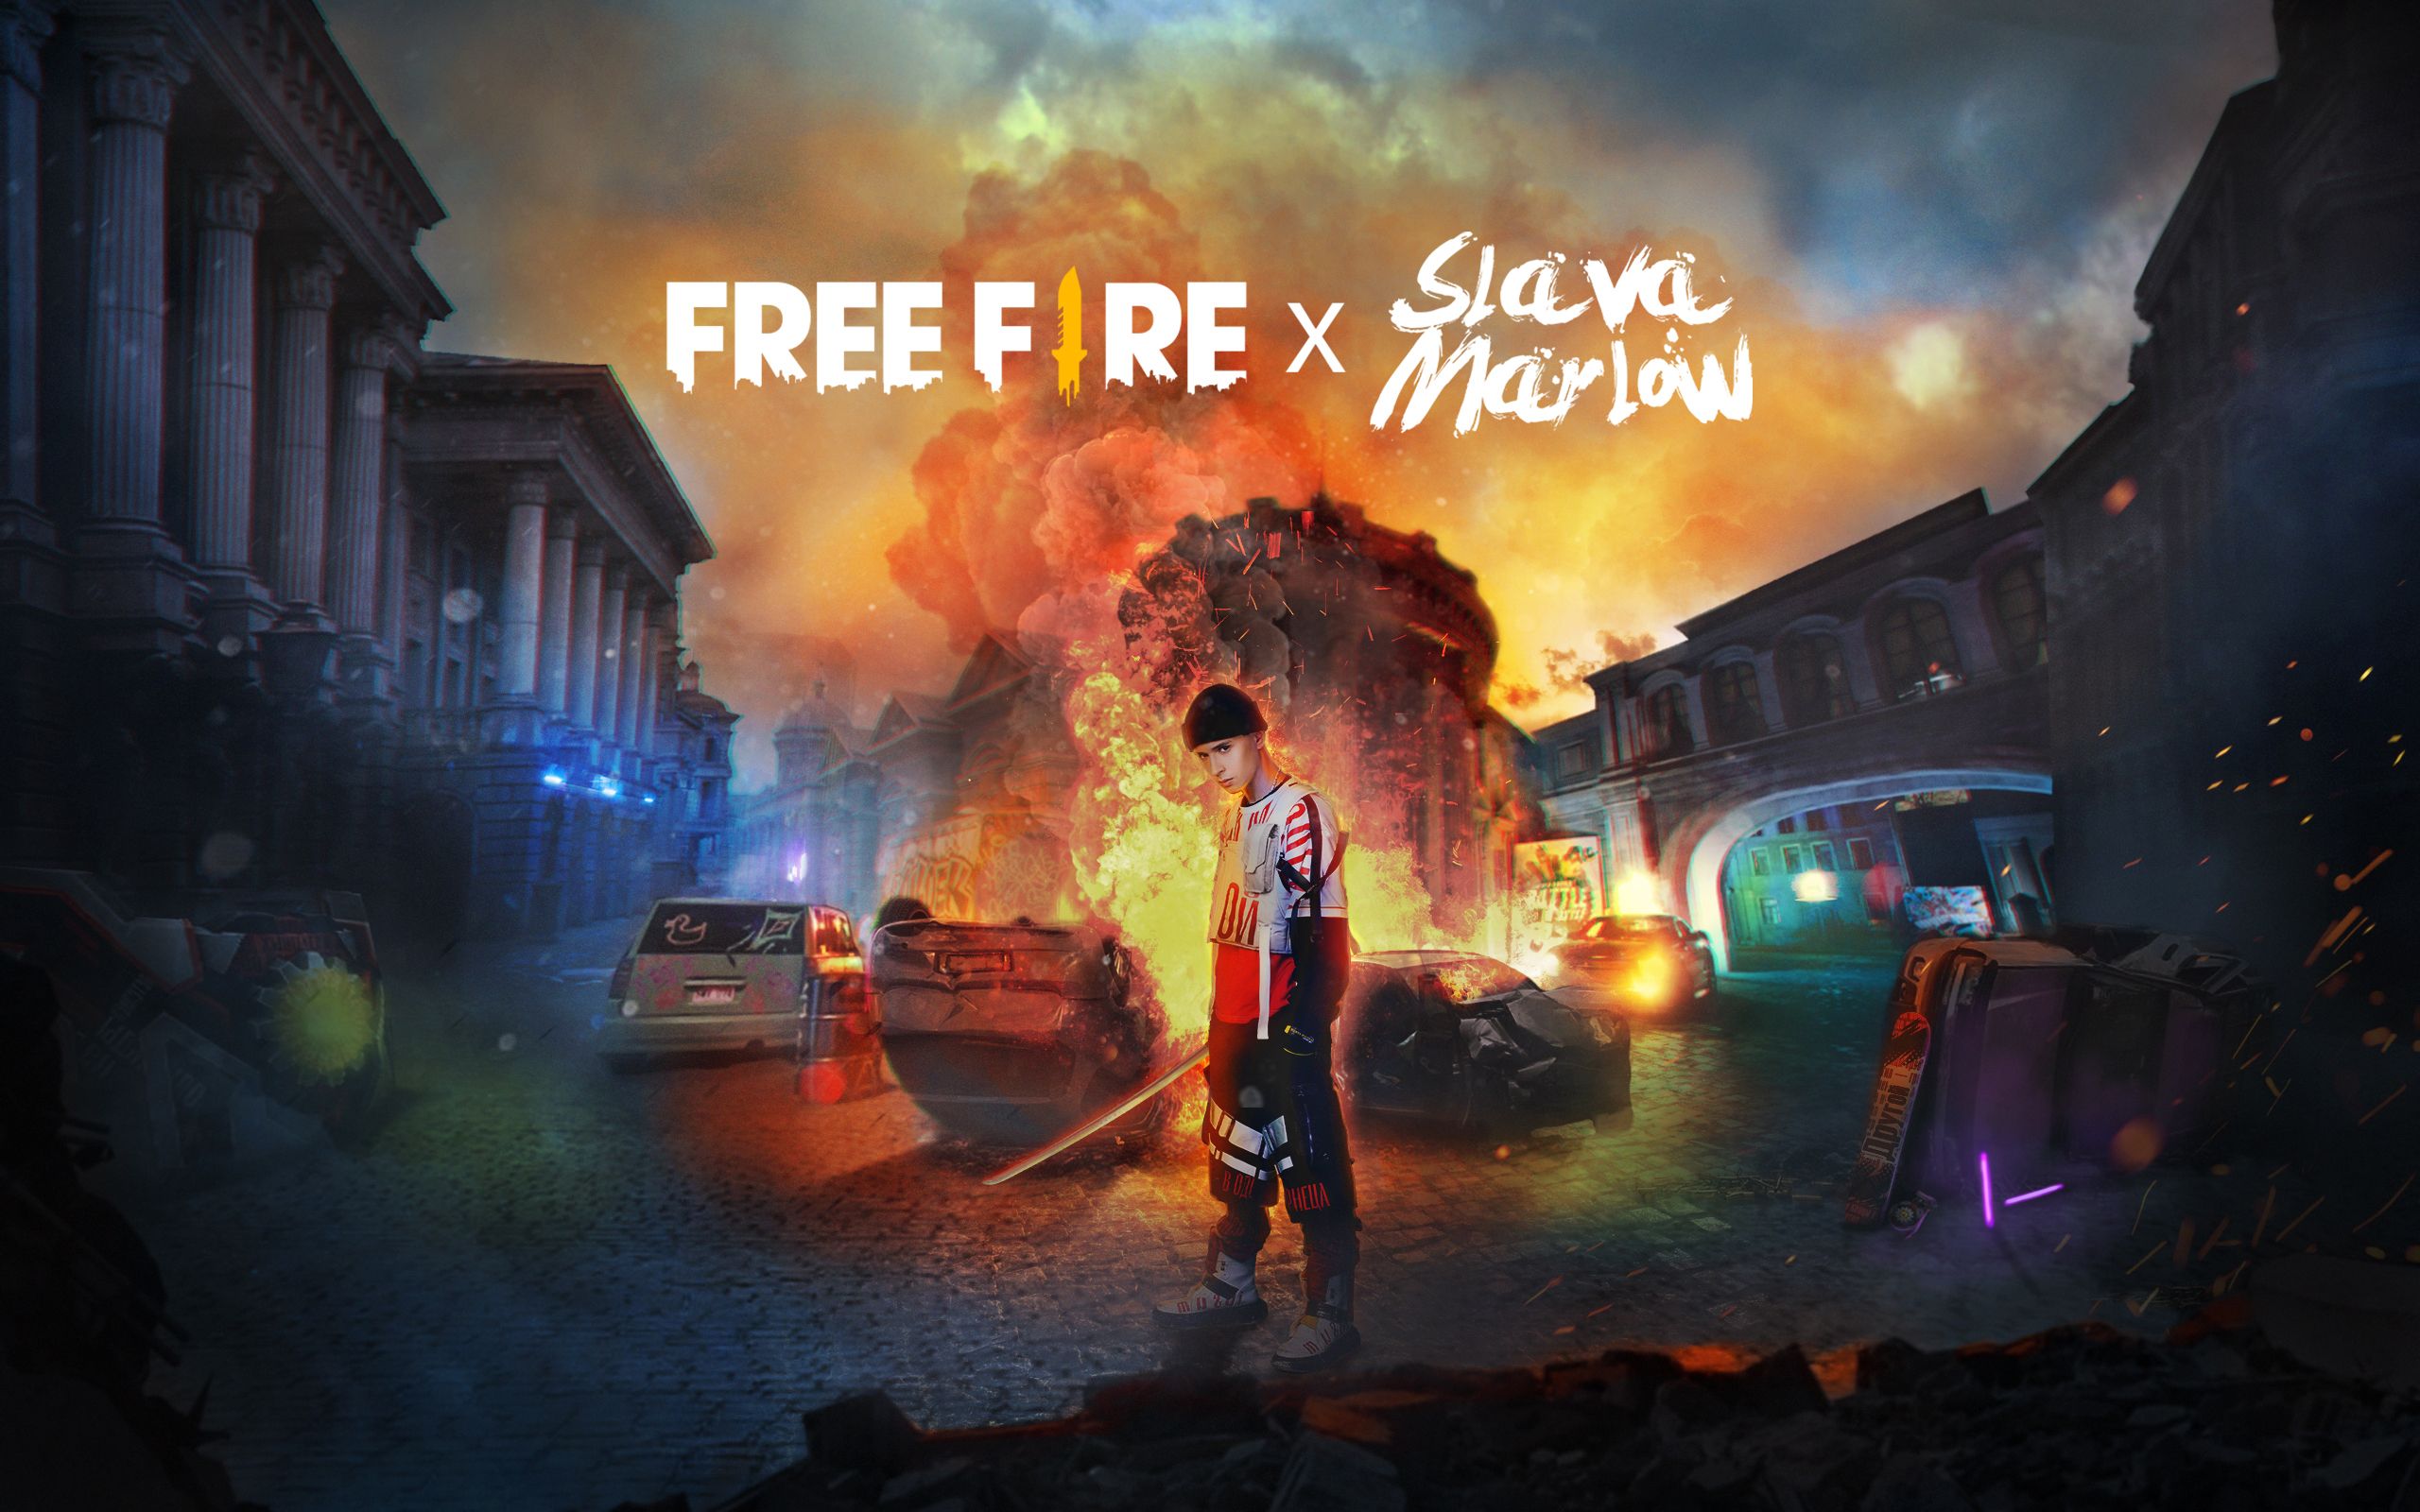 Slava Marlow x free Fire